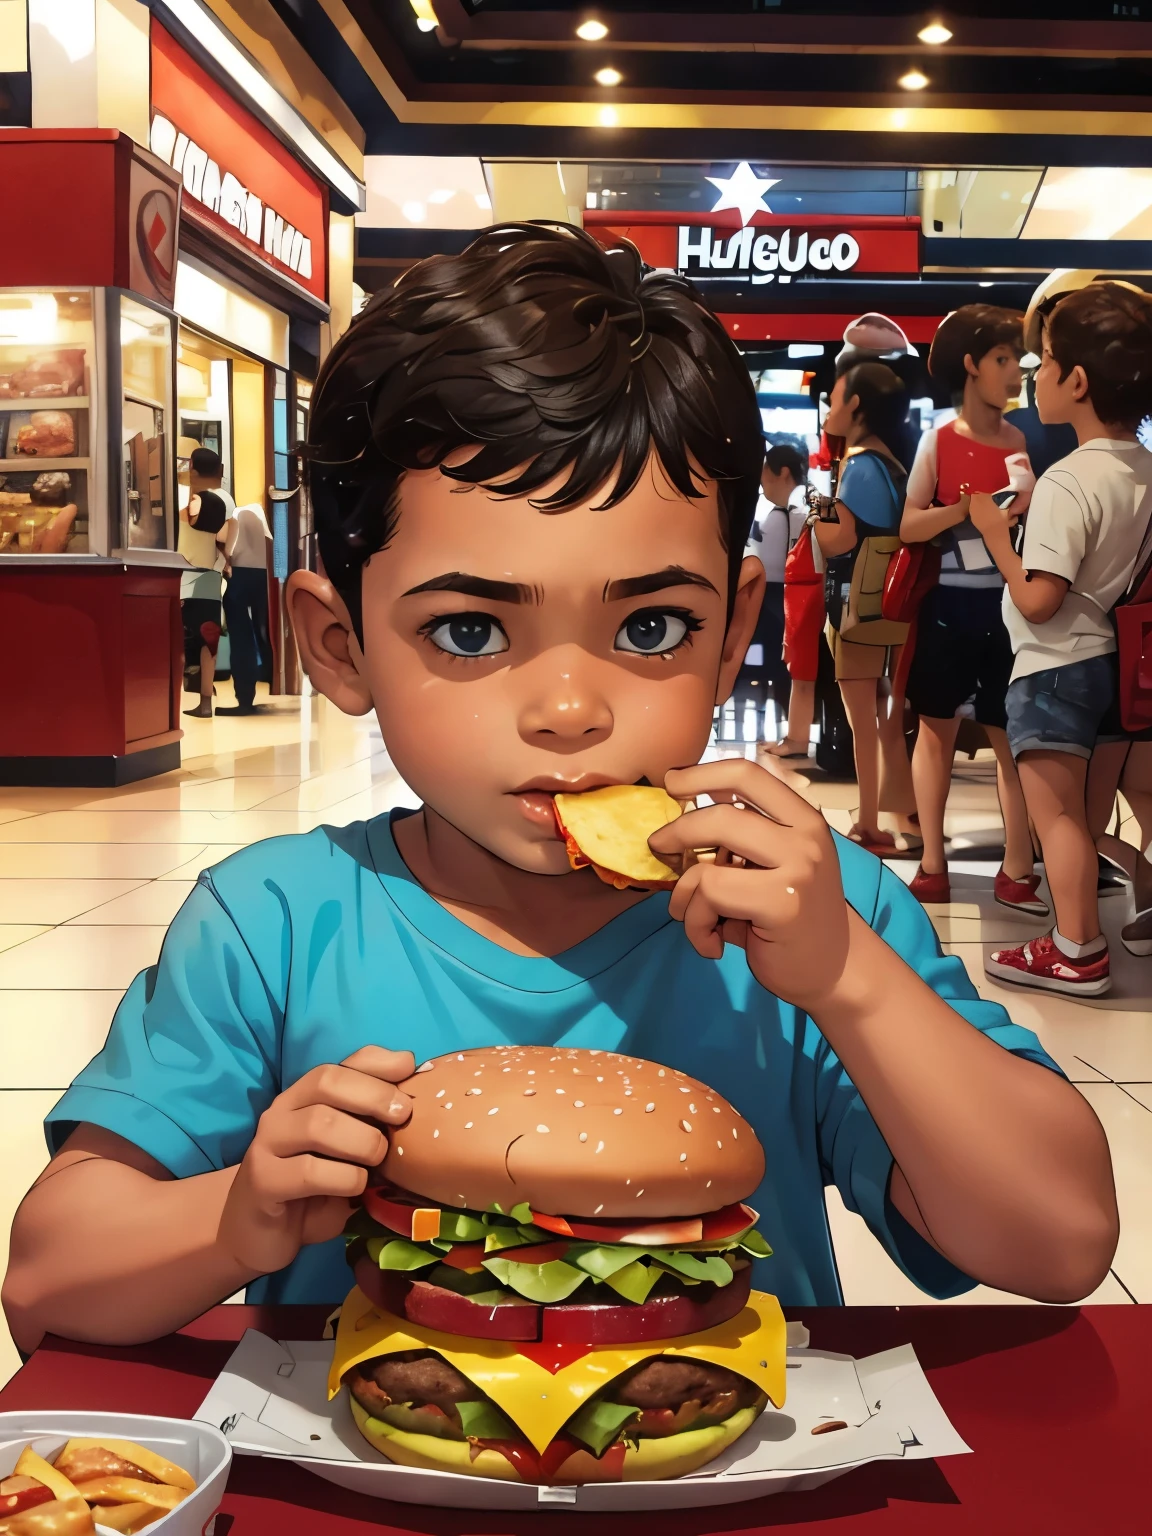 一个小男孩, 6岁, 在商场吃汉堡, 高清, 高质量, 作者：弗兰克·米勒